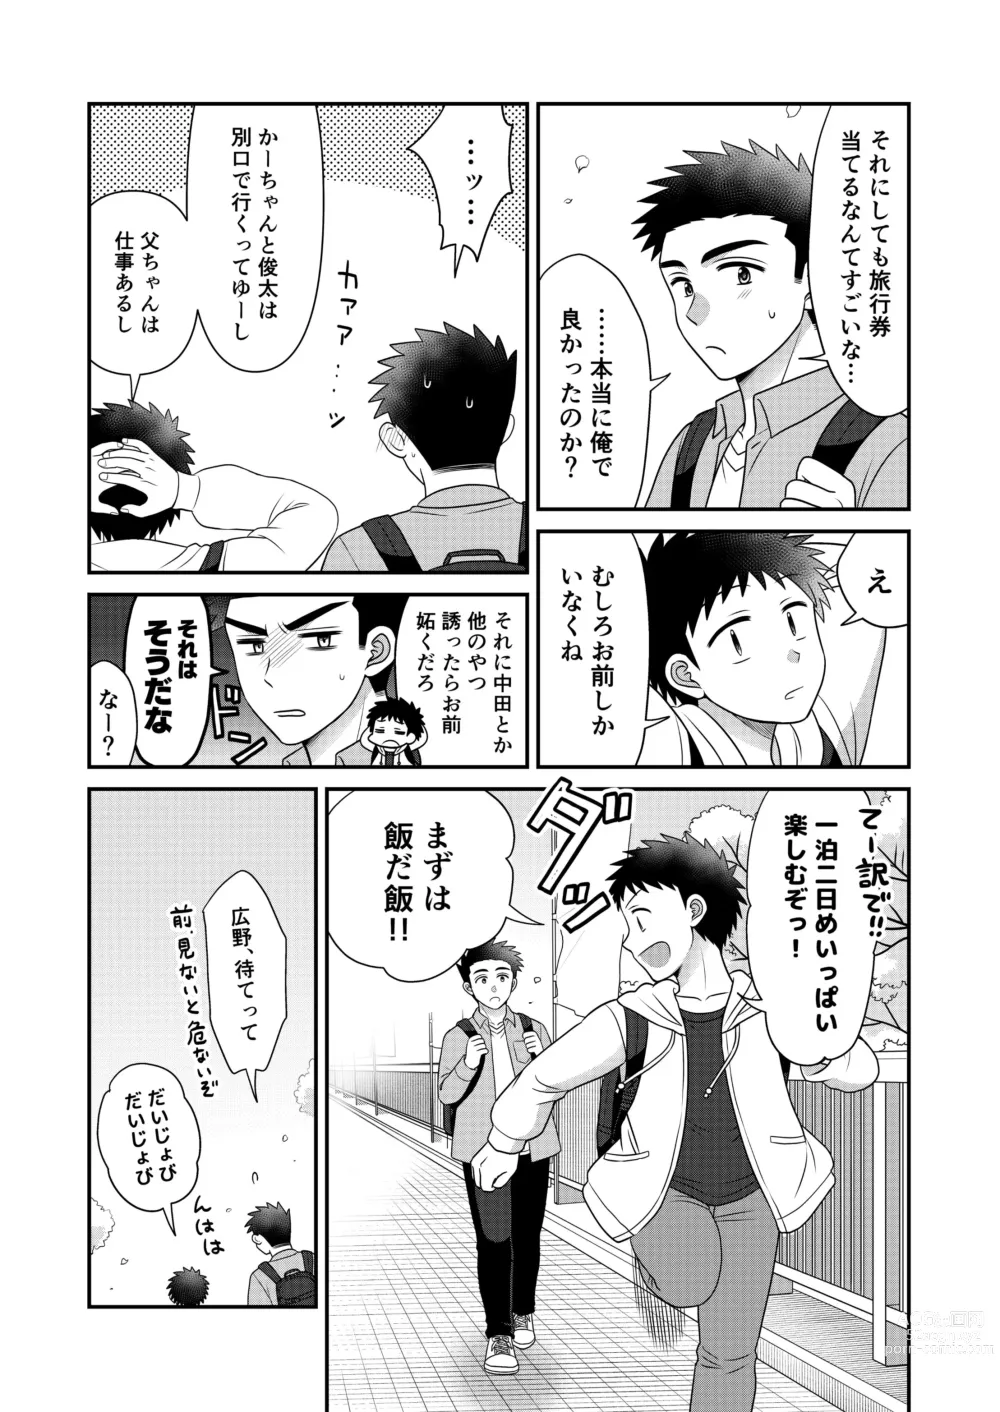 Page 7 of doujinshi Hayatochiri BL Sakura Mau Onsen Ryokou no Hanashi.